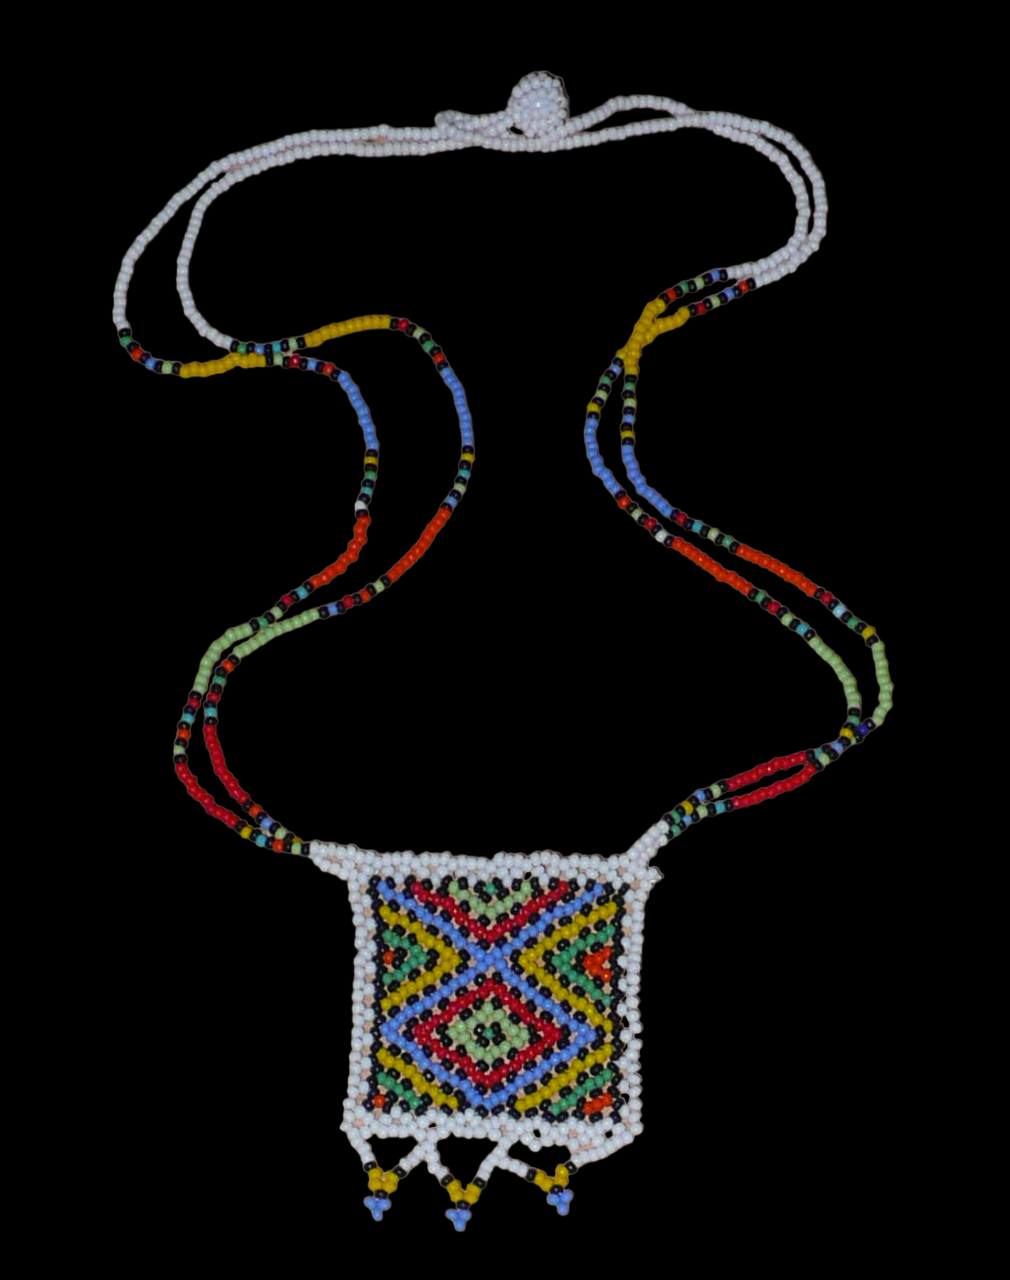 Collier africain traditionnel orné d'un pendentif décoré de motifs ethniques sud-africains ; il se compose d'un tissage de perles de rocaille blanches et multicolores et s'attache avec un fermoir à boule. Ce collier mesure 28,5 cm de long (de la nuque au pendentif), la longueur de chaîne autour du cou est de 50 cm ; le pendentif carré orné d'une frise perlée mesure 5,5 cm sur 4,5 cm.